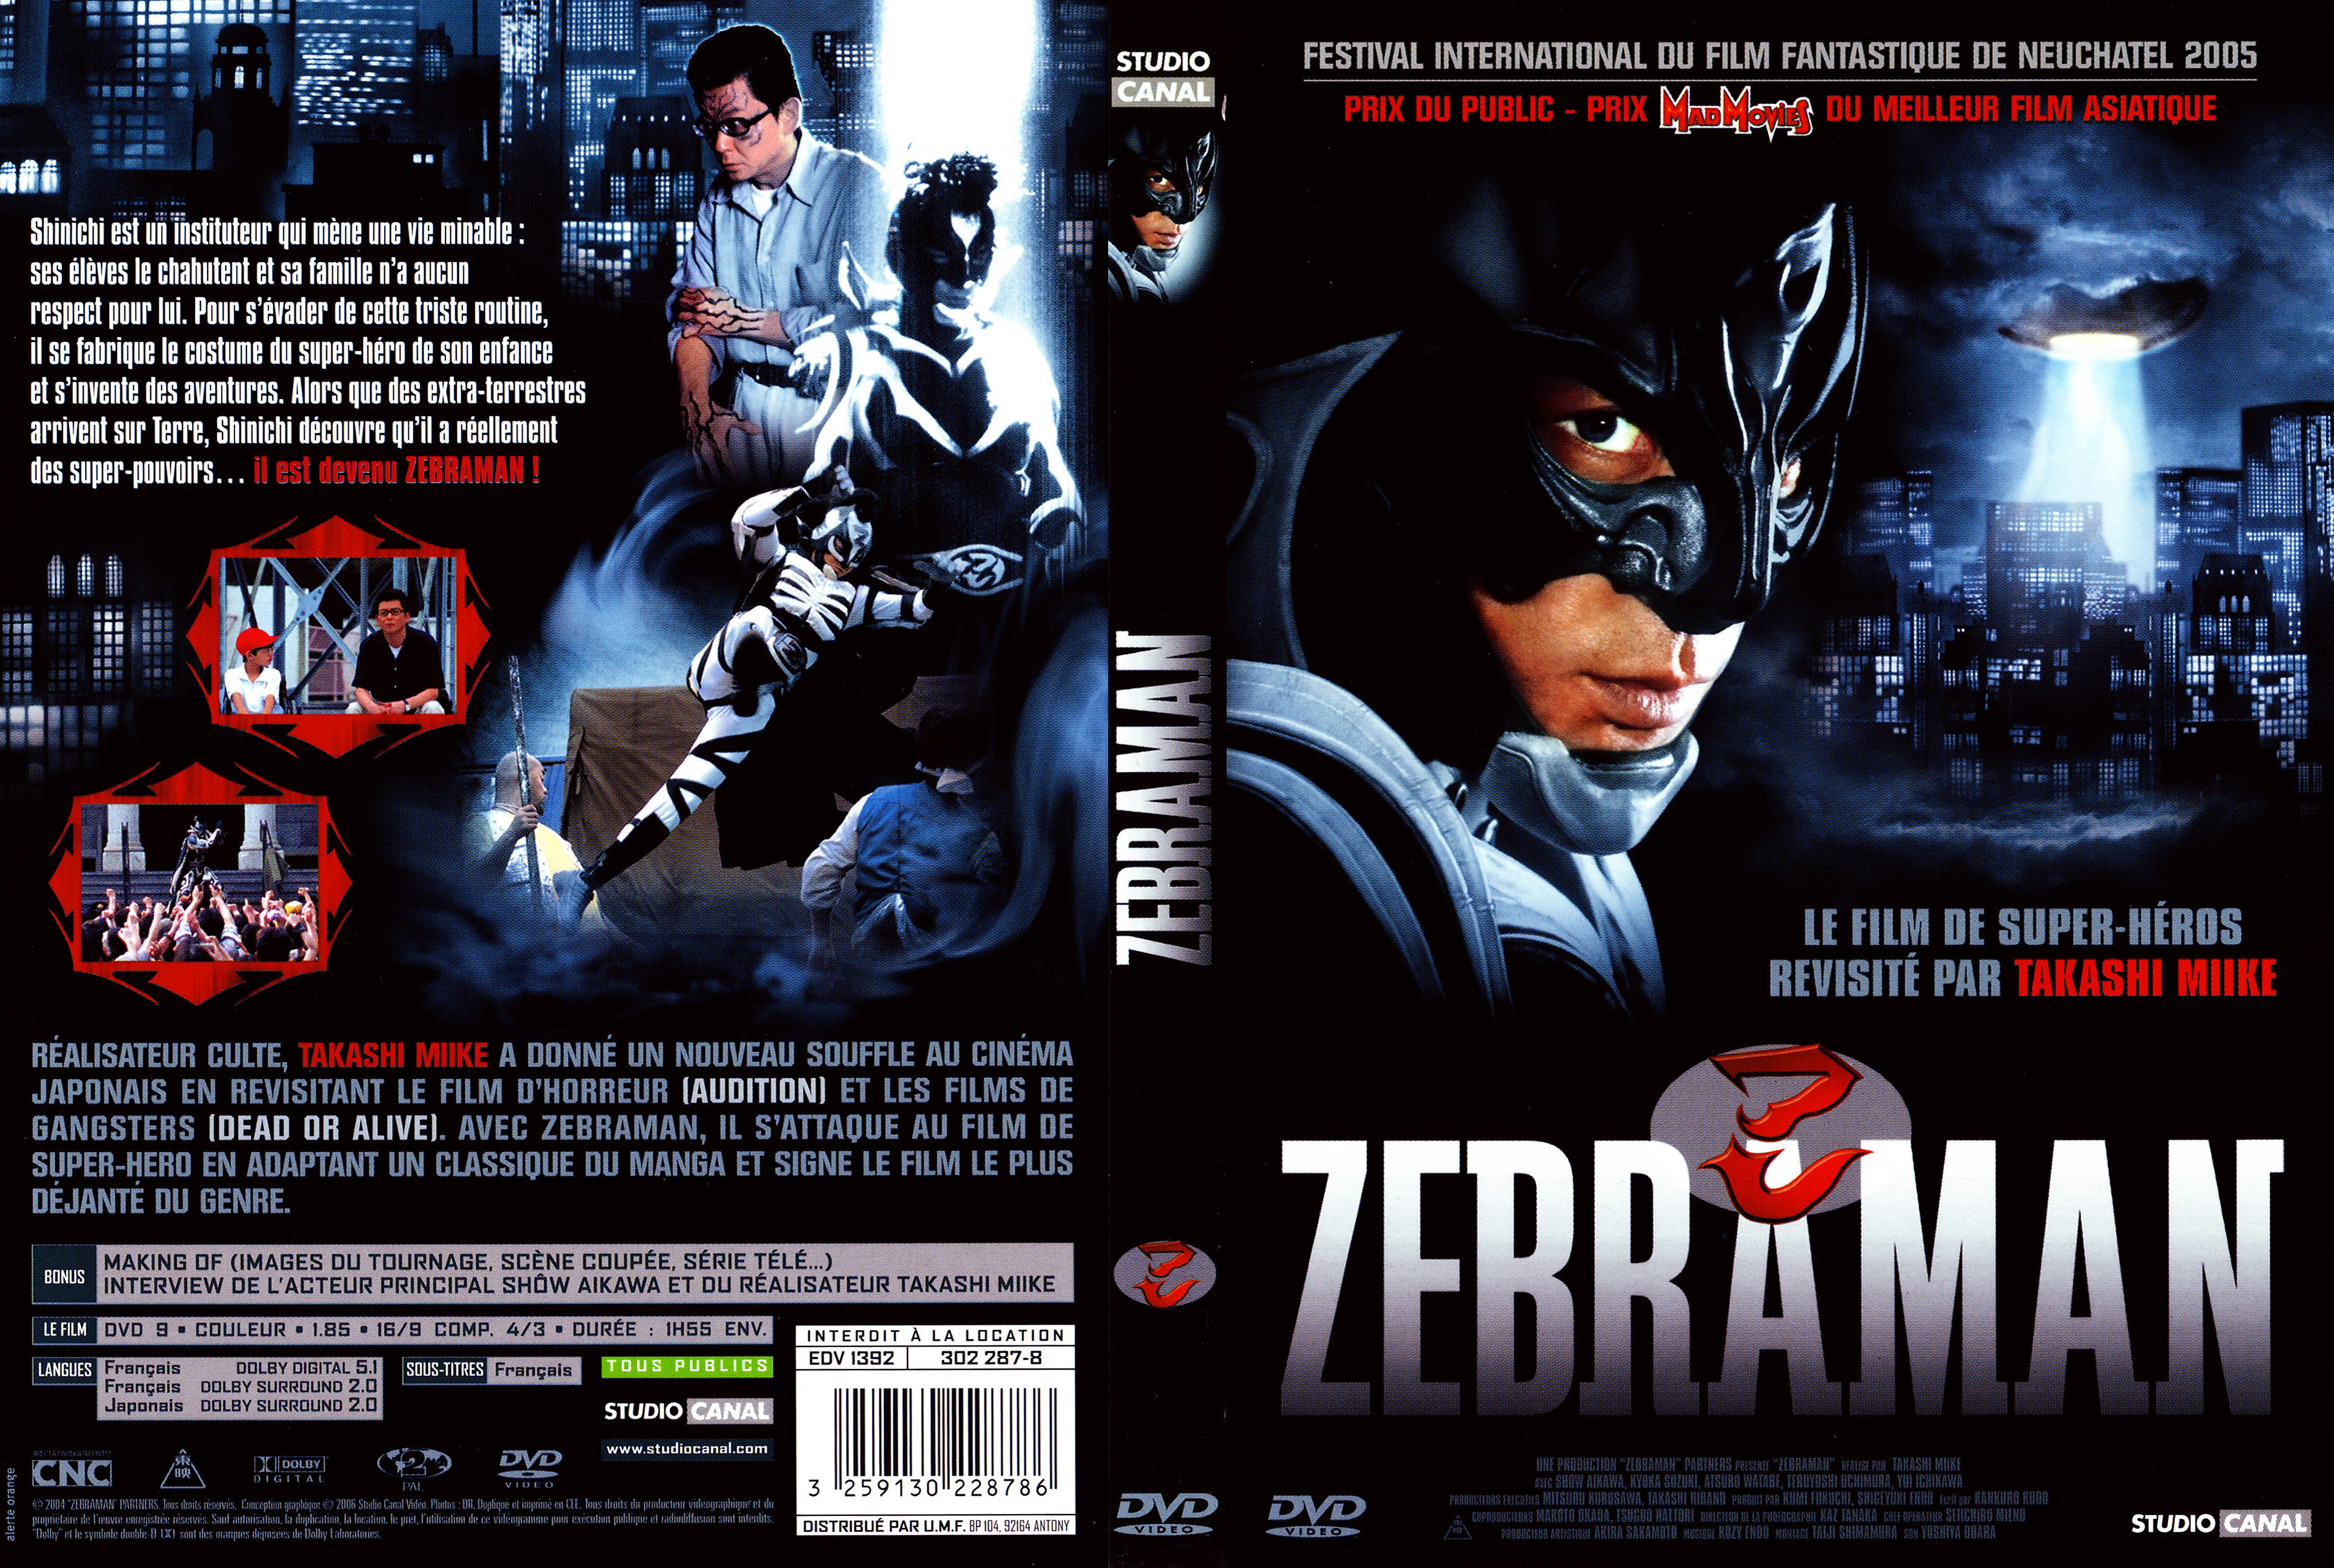 Jaquette DVD Zebraman v2